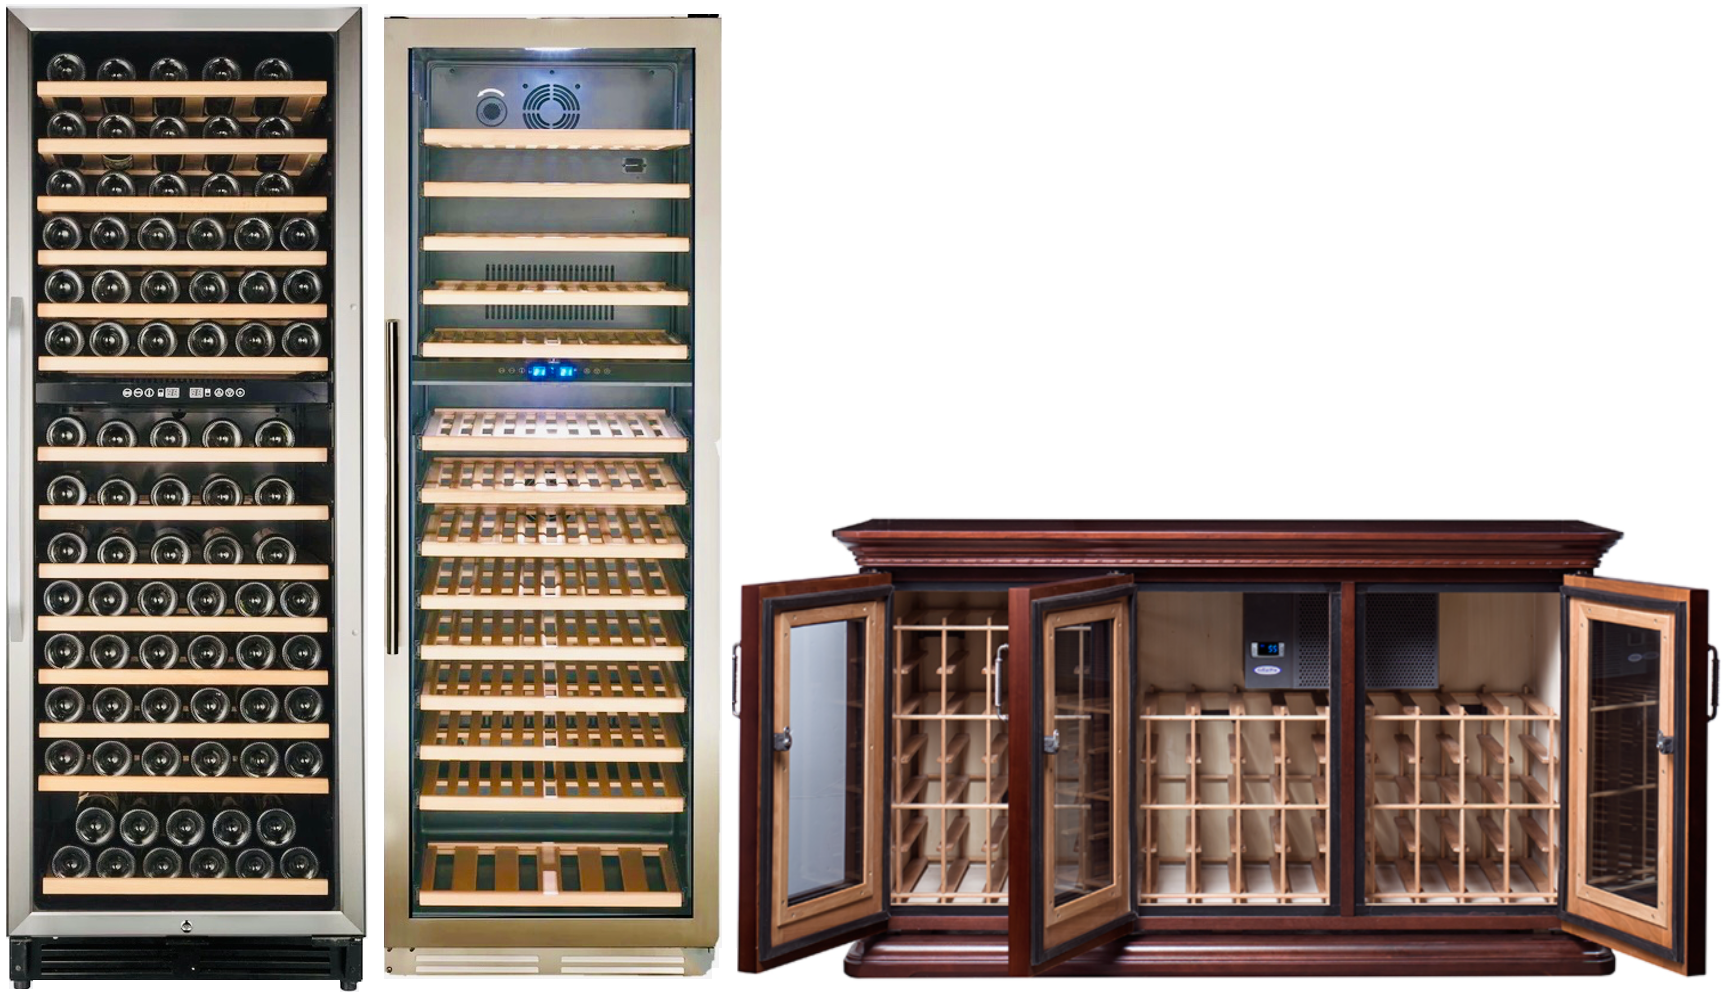 Kedco Avanti and La Cache wine cooler cabinets.